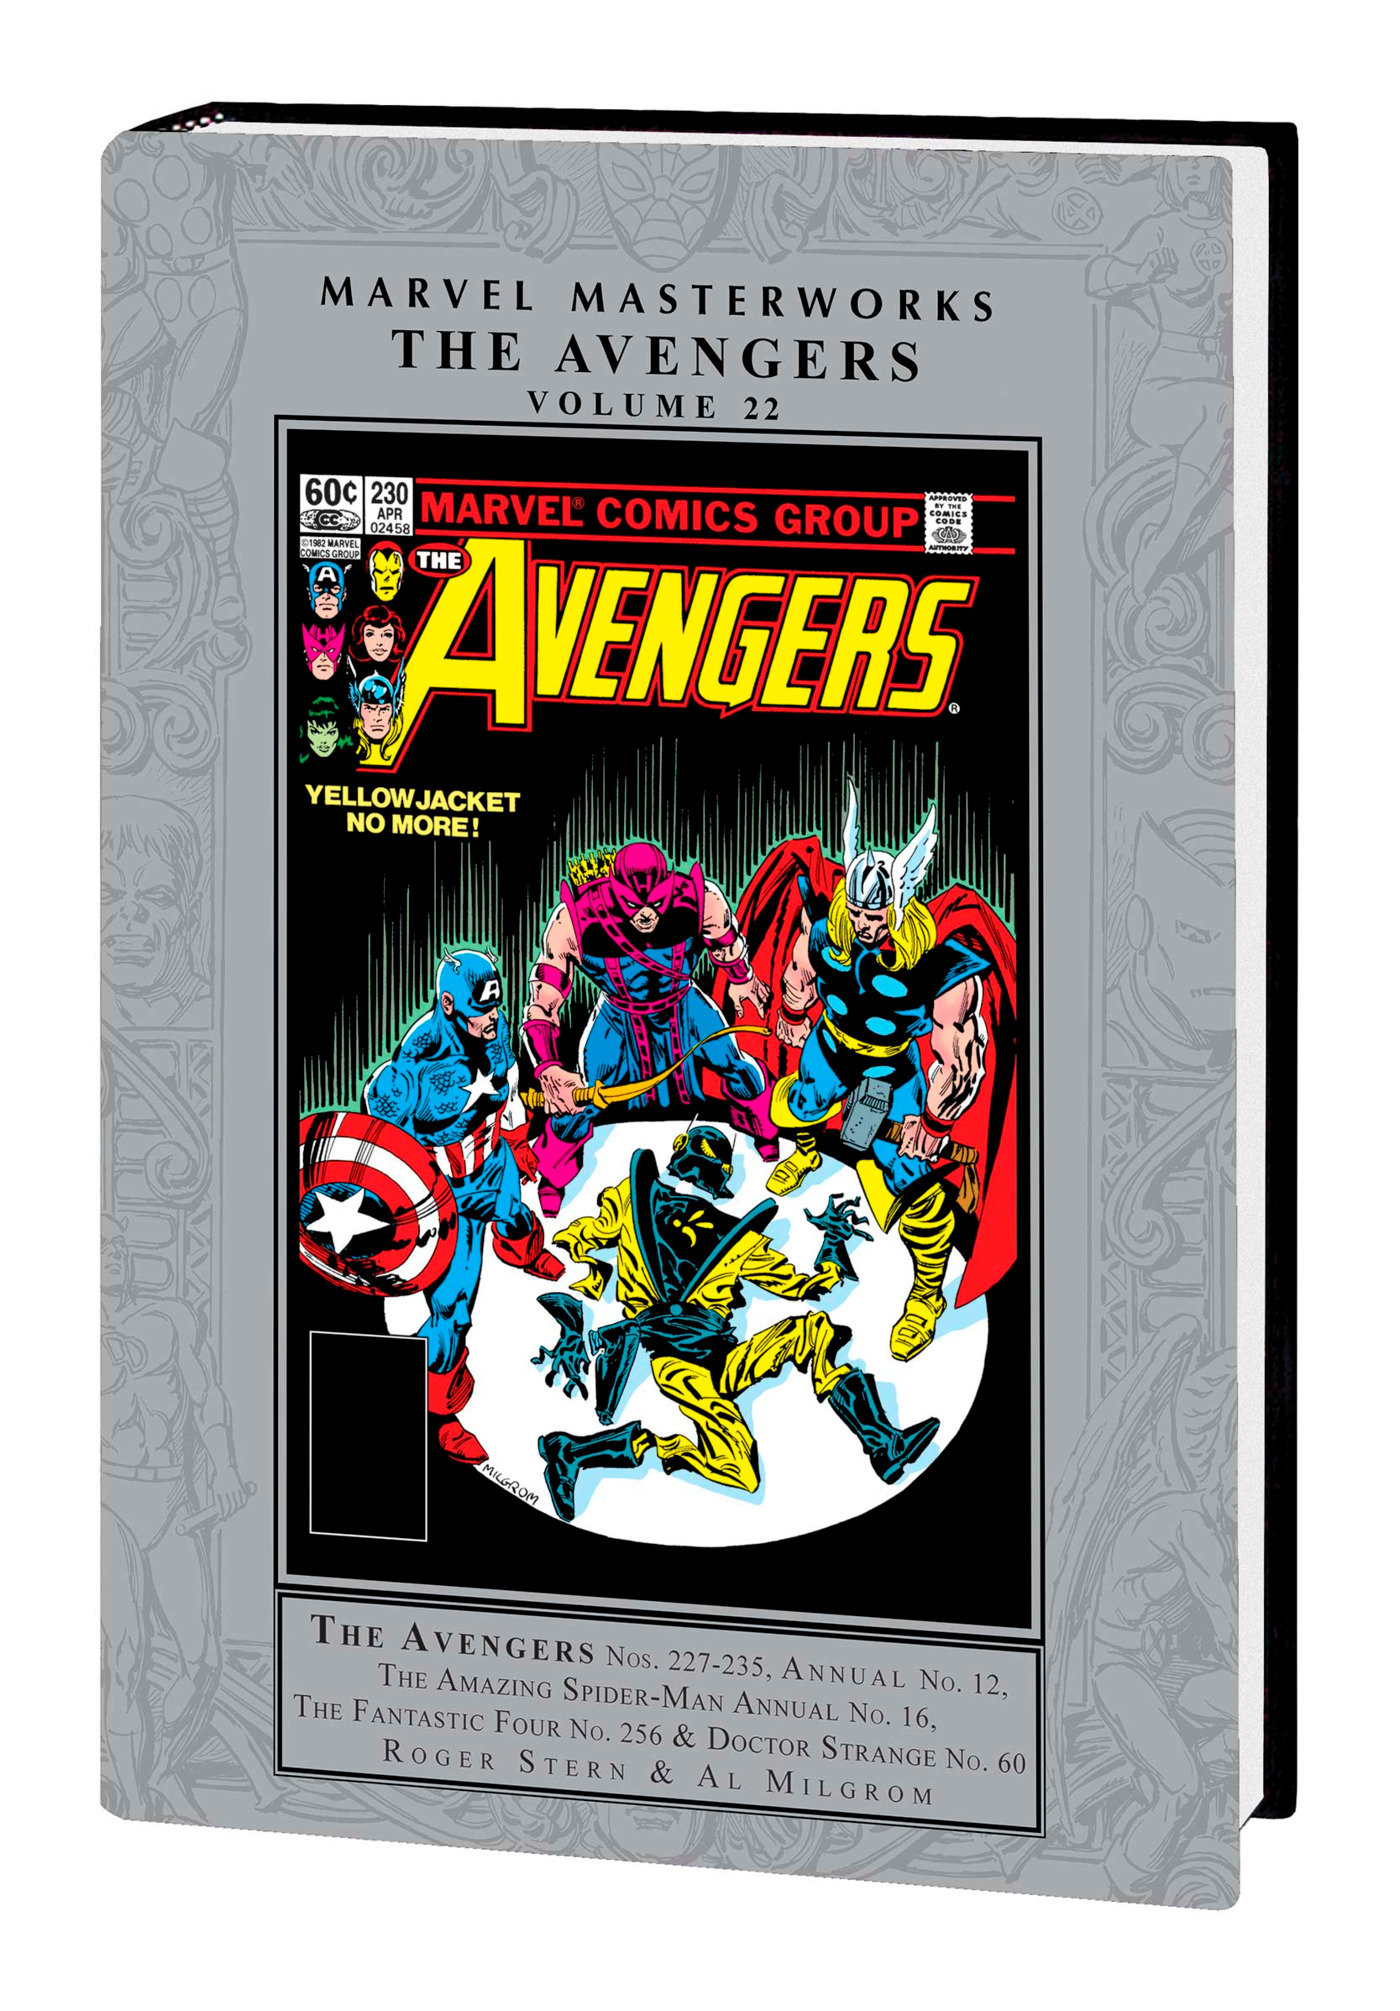 Marvel Masterworks Avengers Hardcover Volume 22